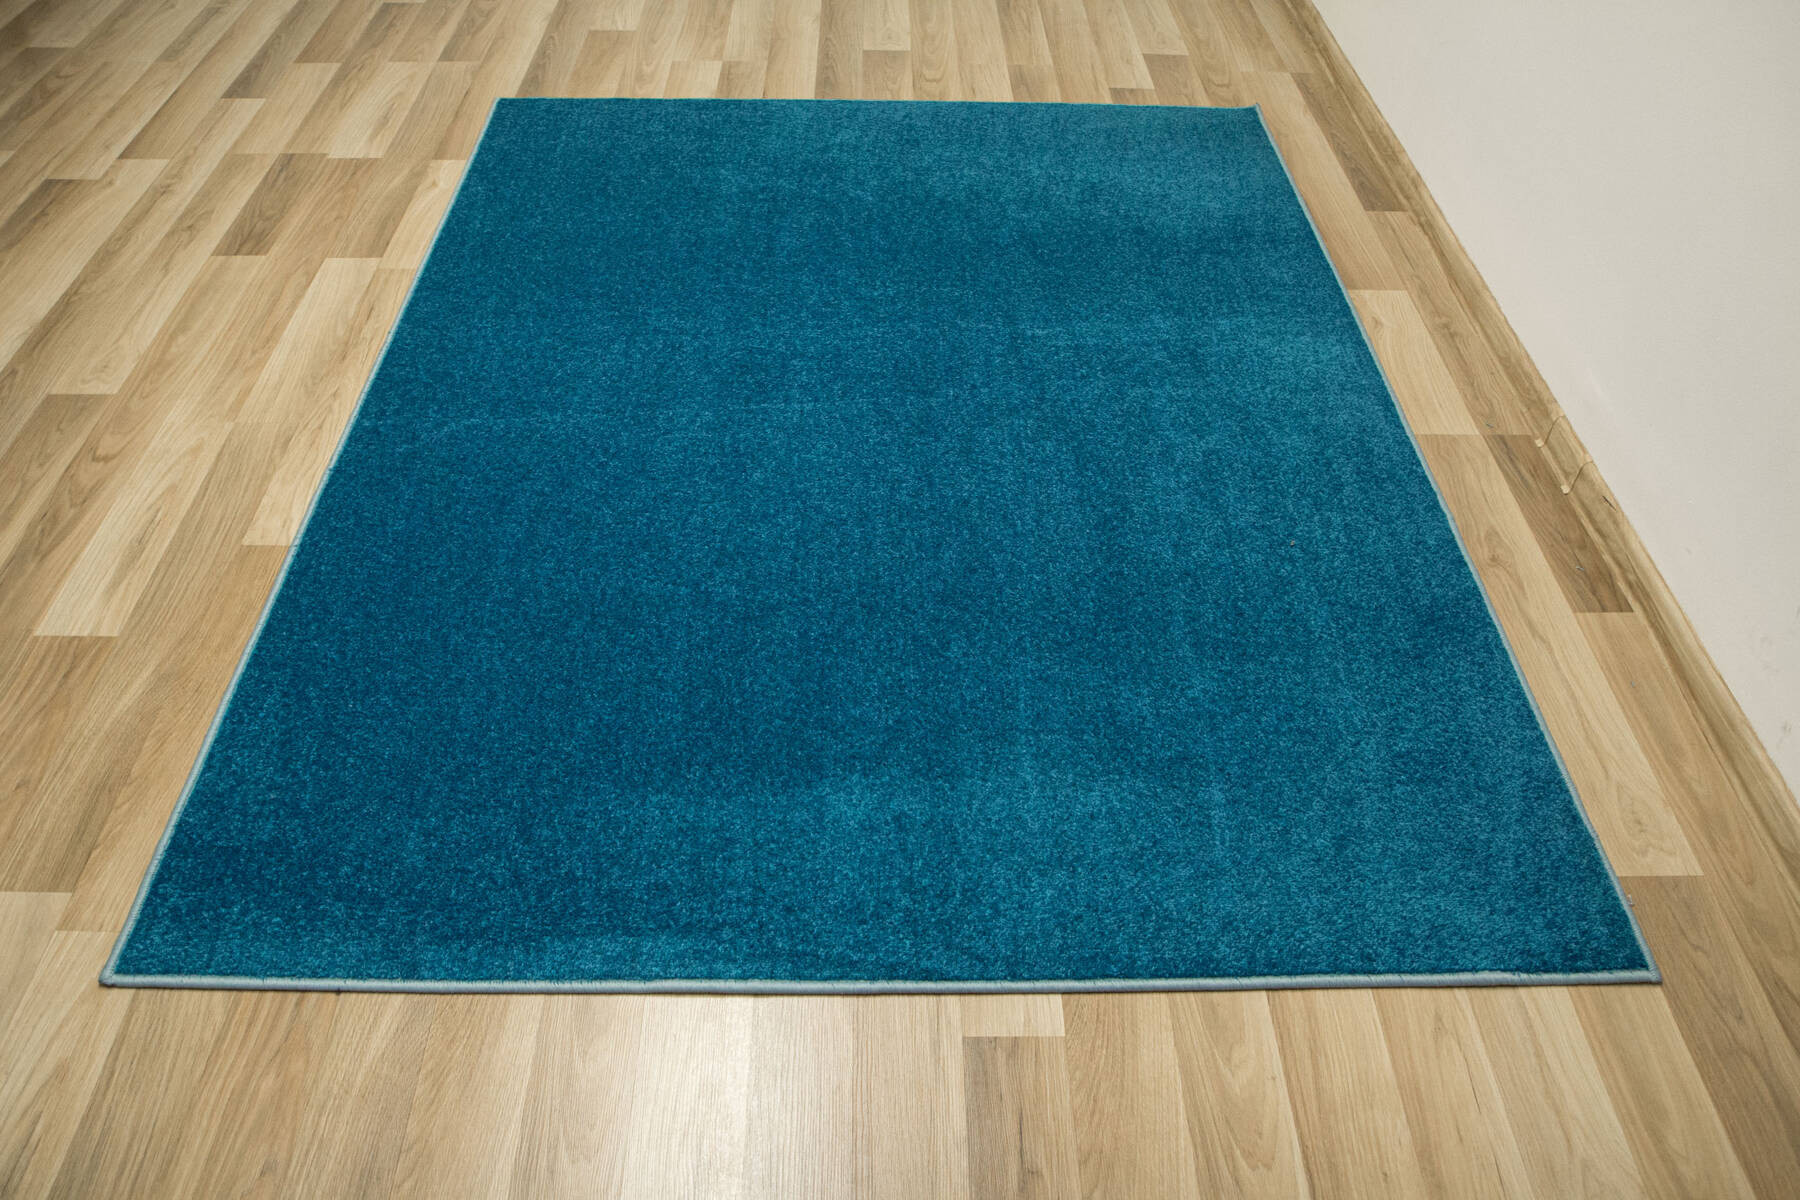 Metrážový koberec Tiffany 183 tyrkysový